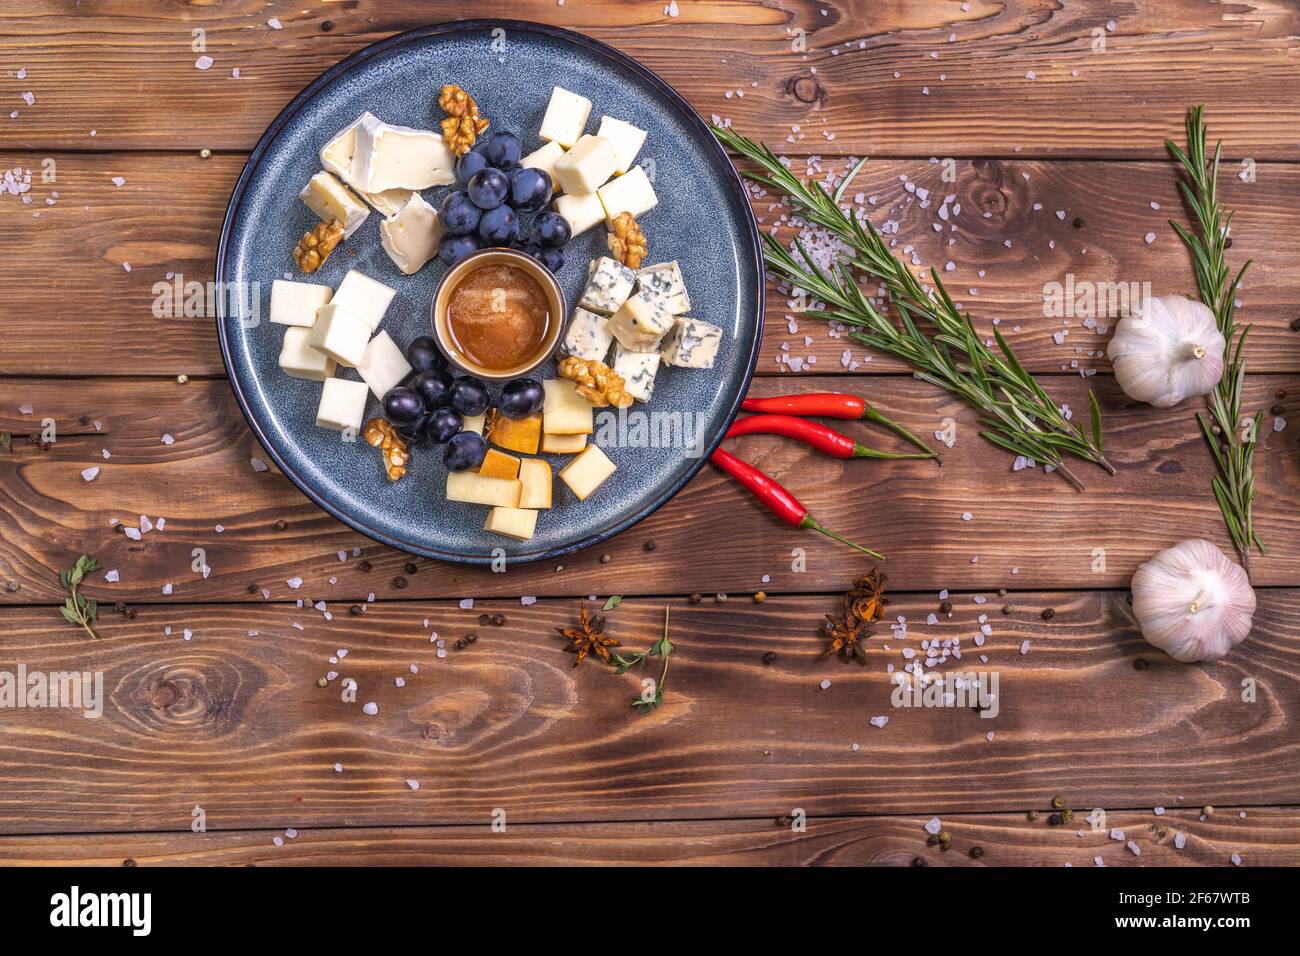 Une assiette de fromage en tranches, miel, raisins sur fond de bois, décorée d'épices, romarin, ail. Service de restaurant. Banque D'Images